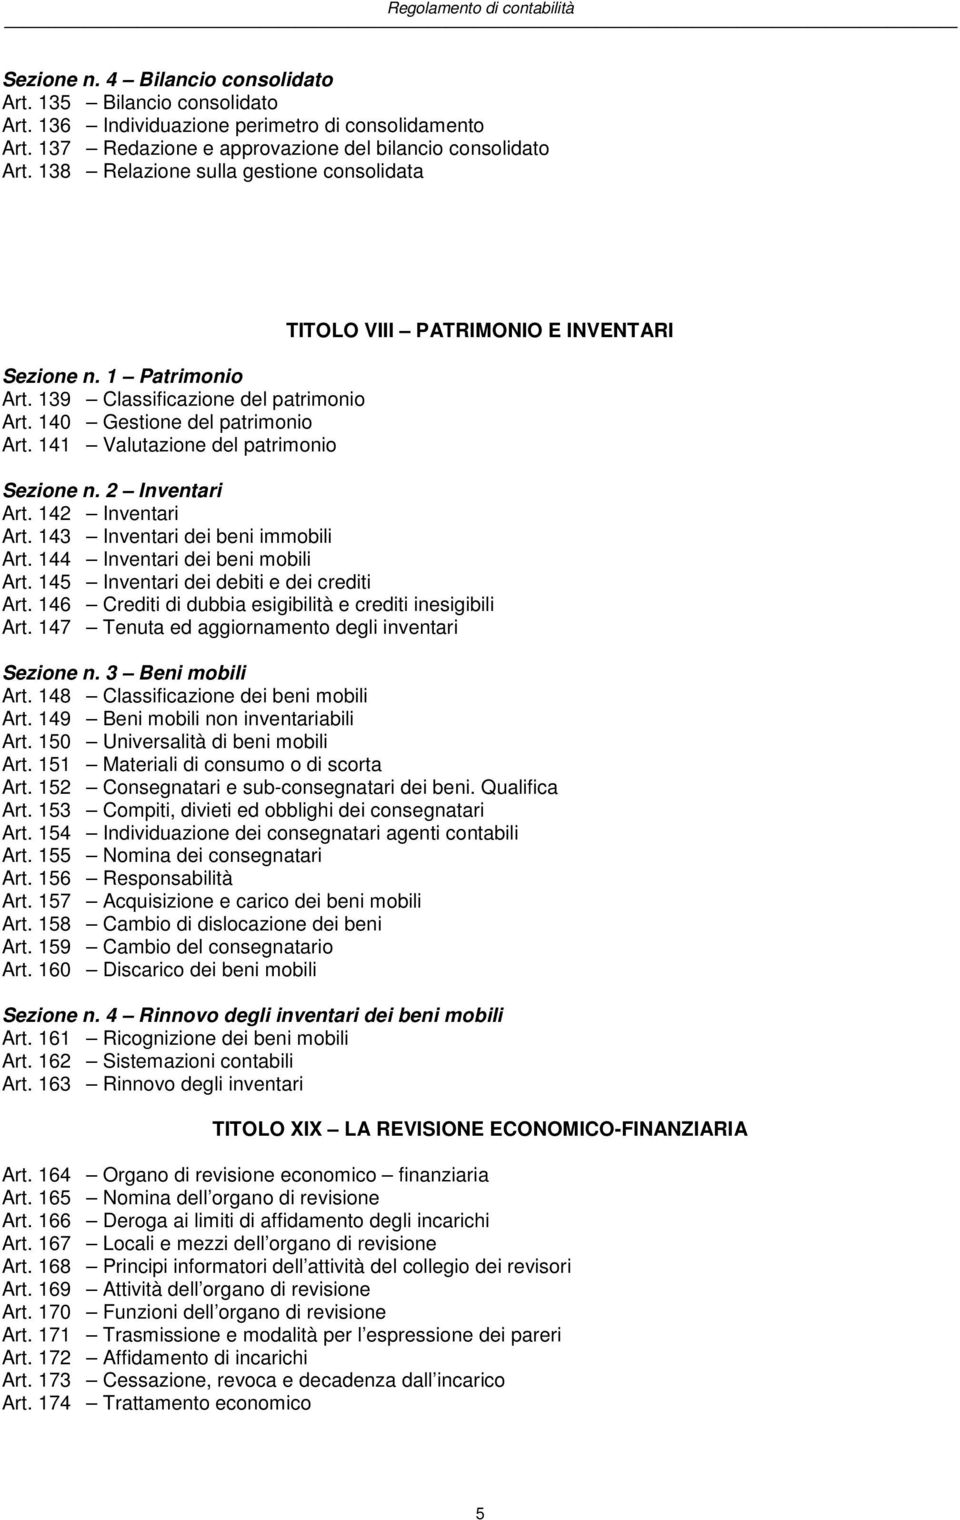 141 Valutazione del patrimonio TITOLO VIII PATRIMONIO E INVENTARI Sezione n. 2 Inventari Art. 142 Inventari Art. 143 Inventari dei beni immobili Art. 144 Inventari dei beni mobili Art.